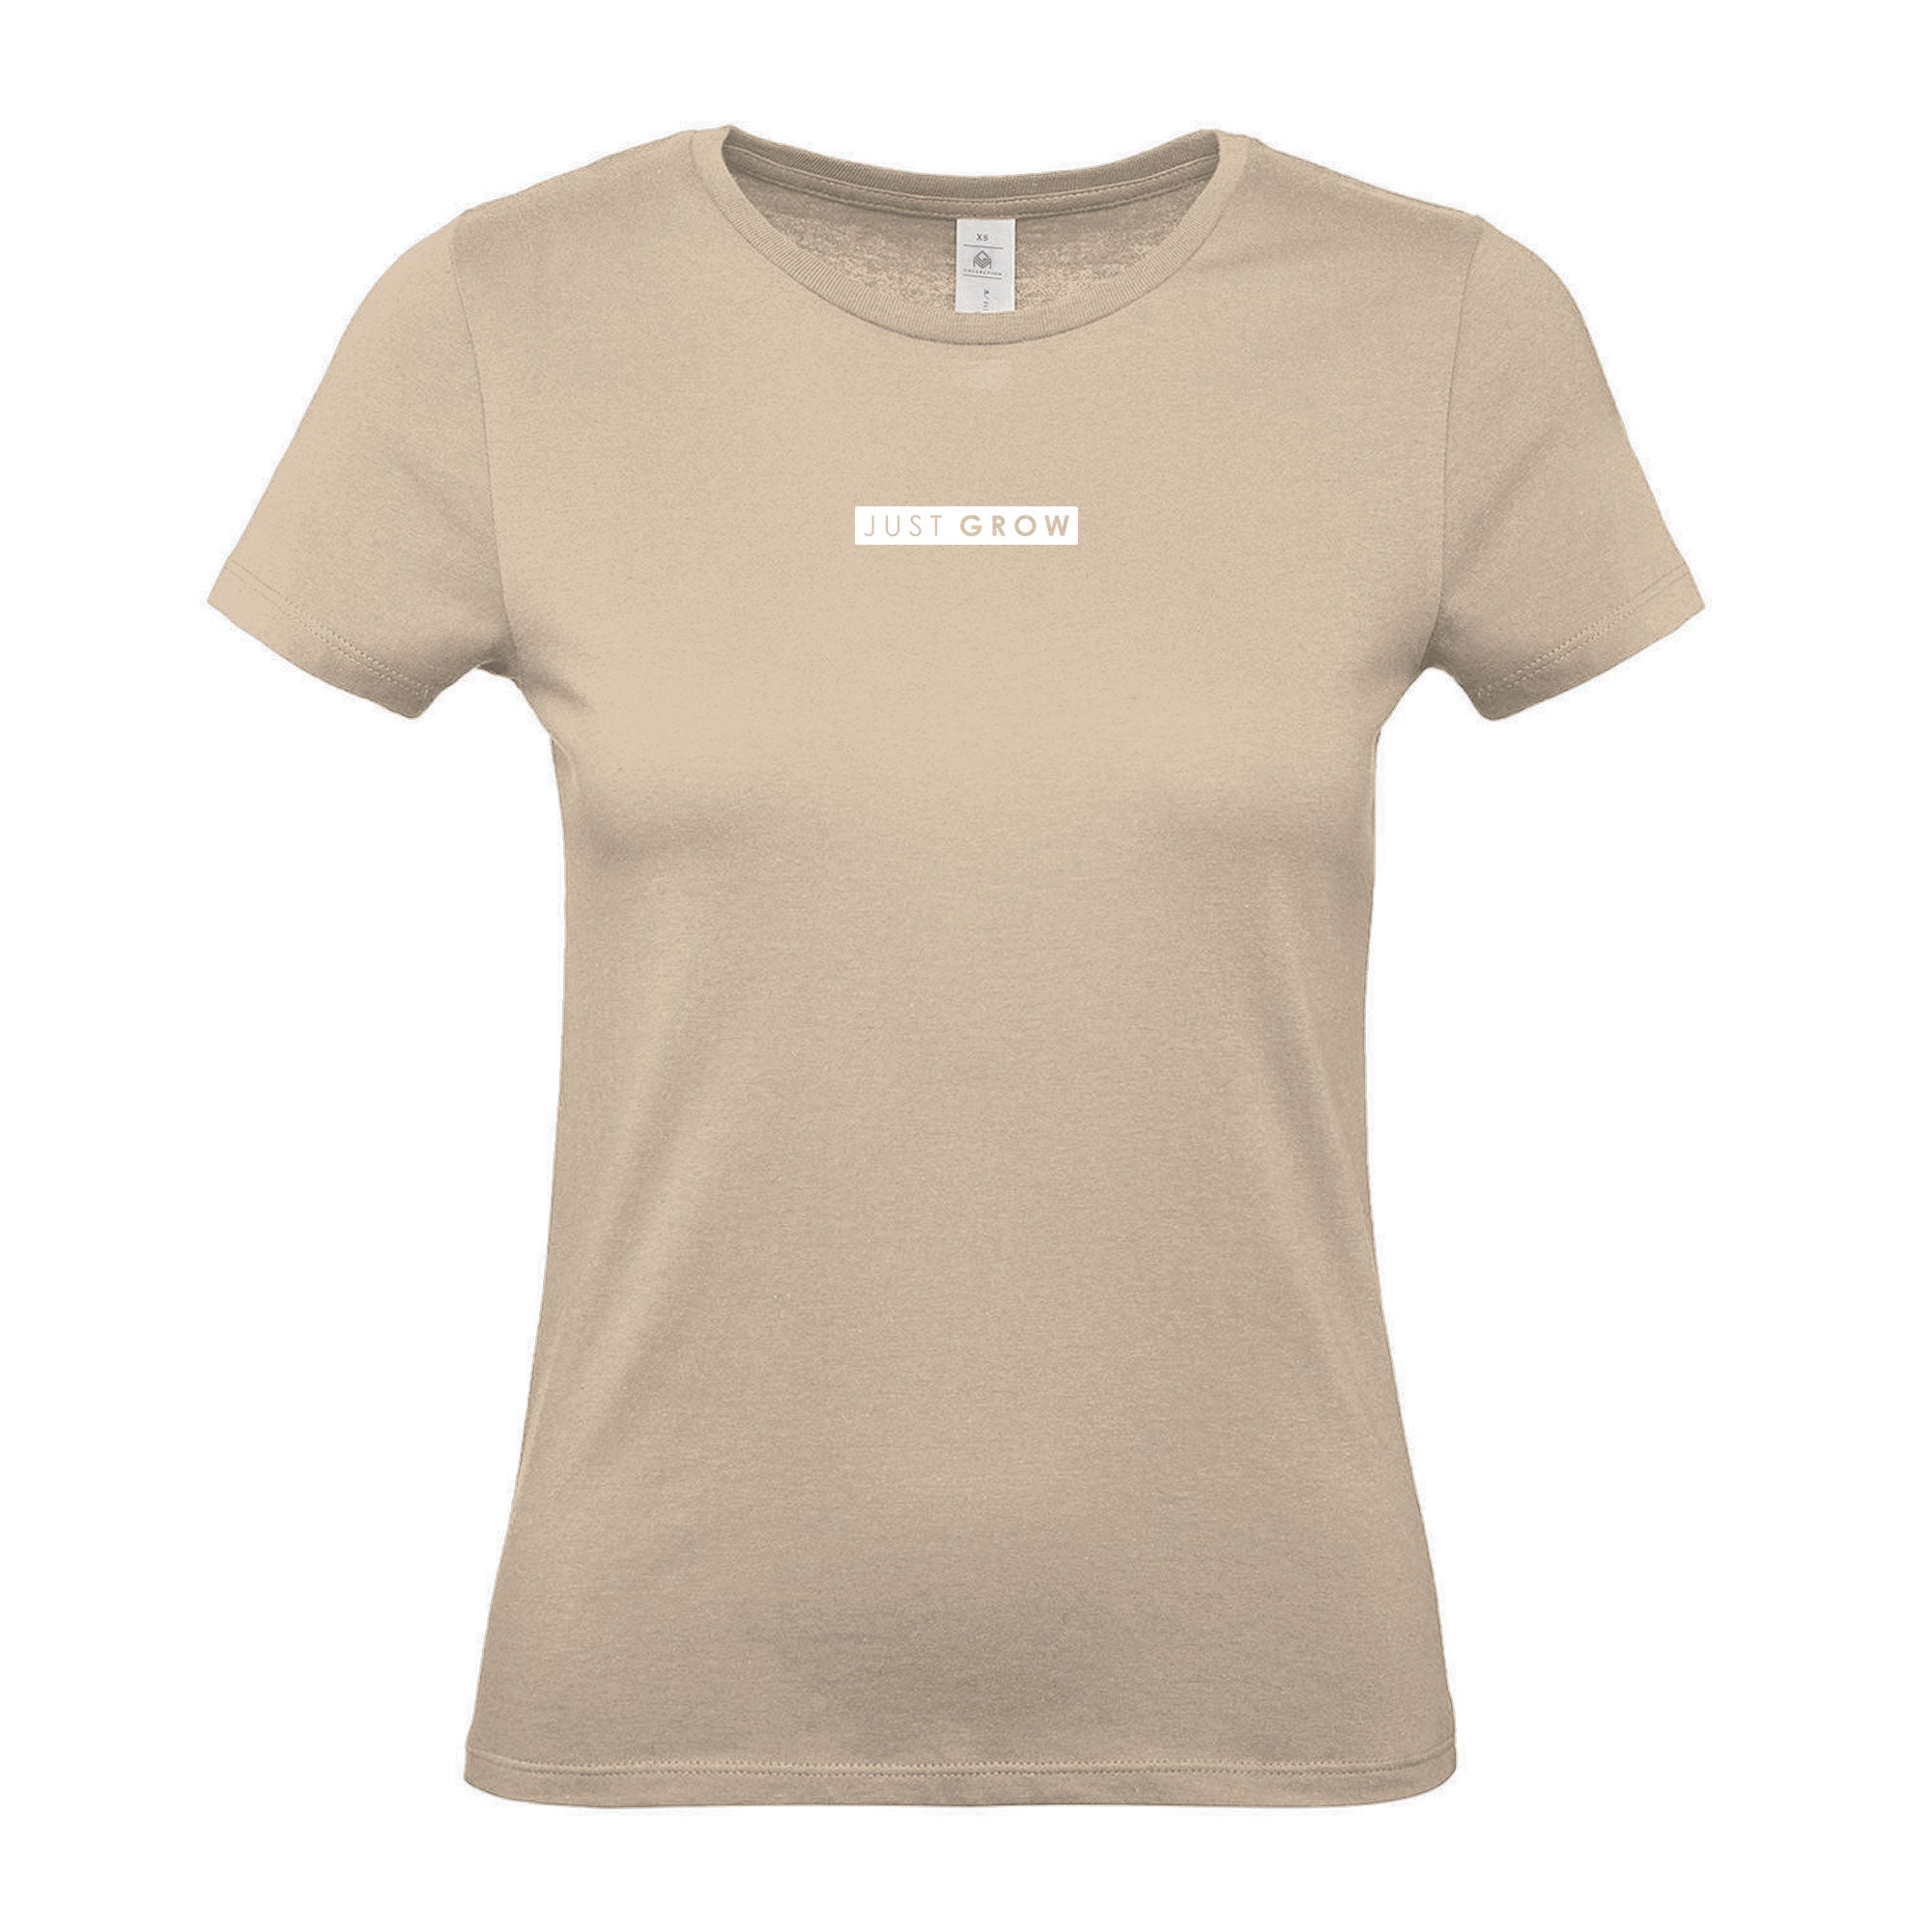 Just GROW - Women's Gym T-Shirt